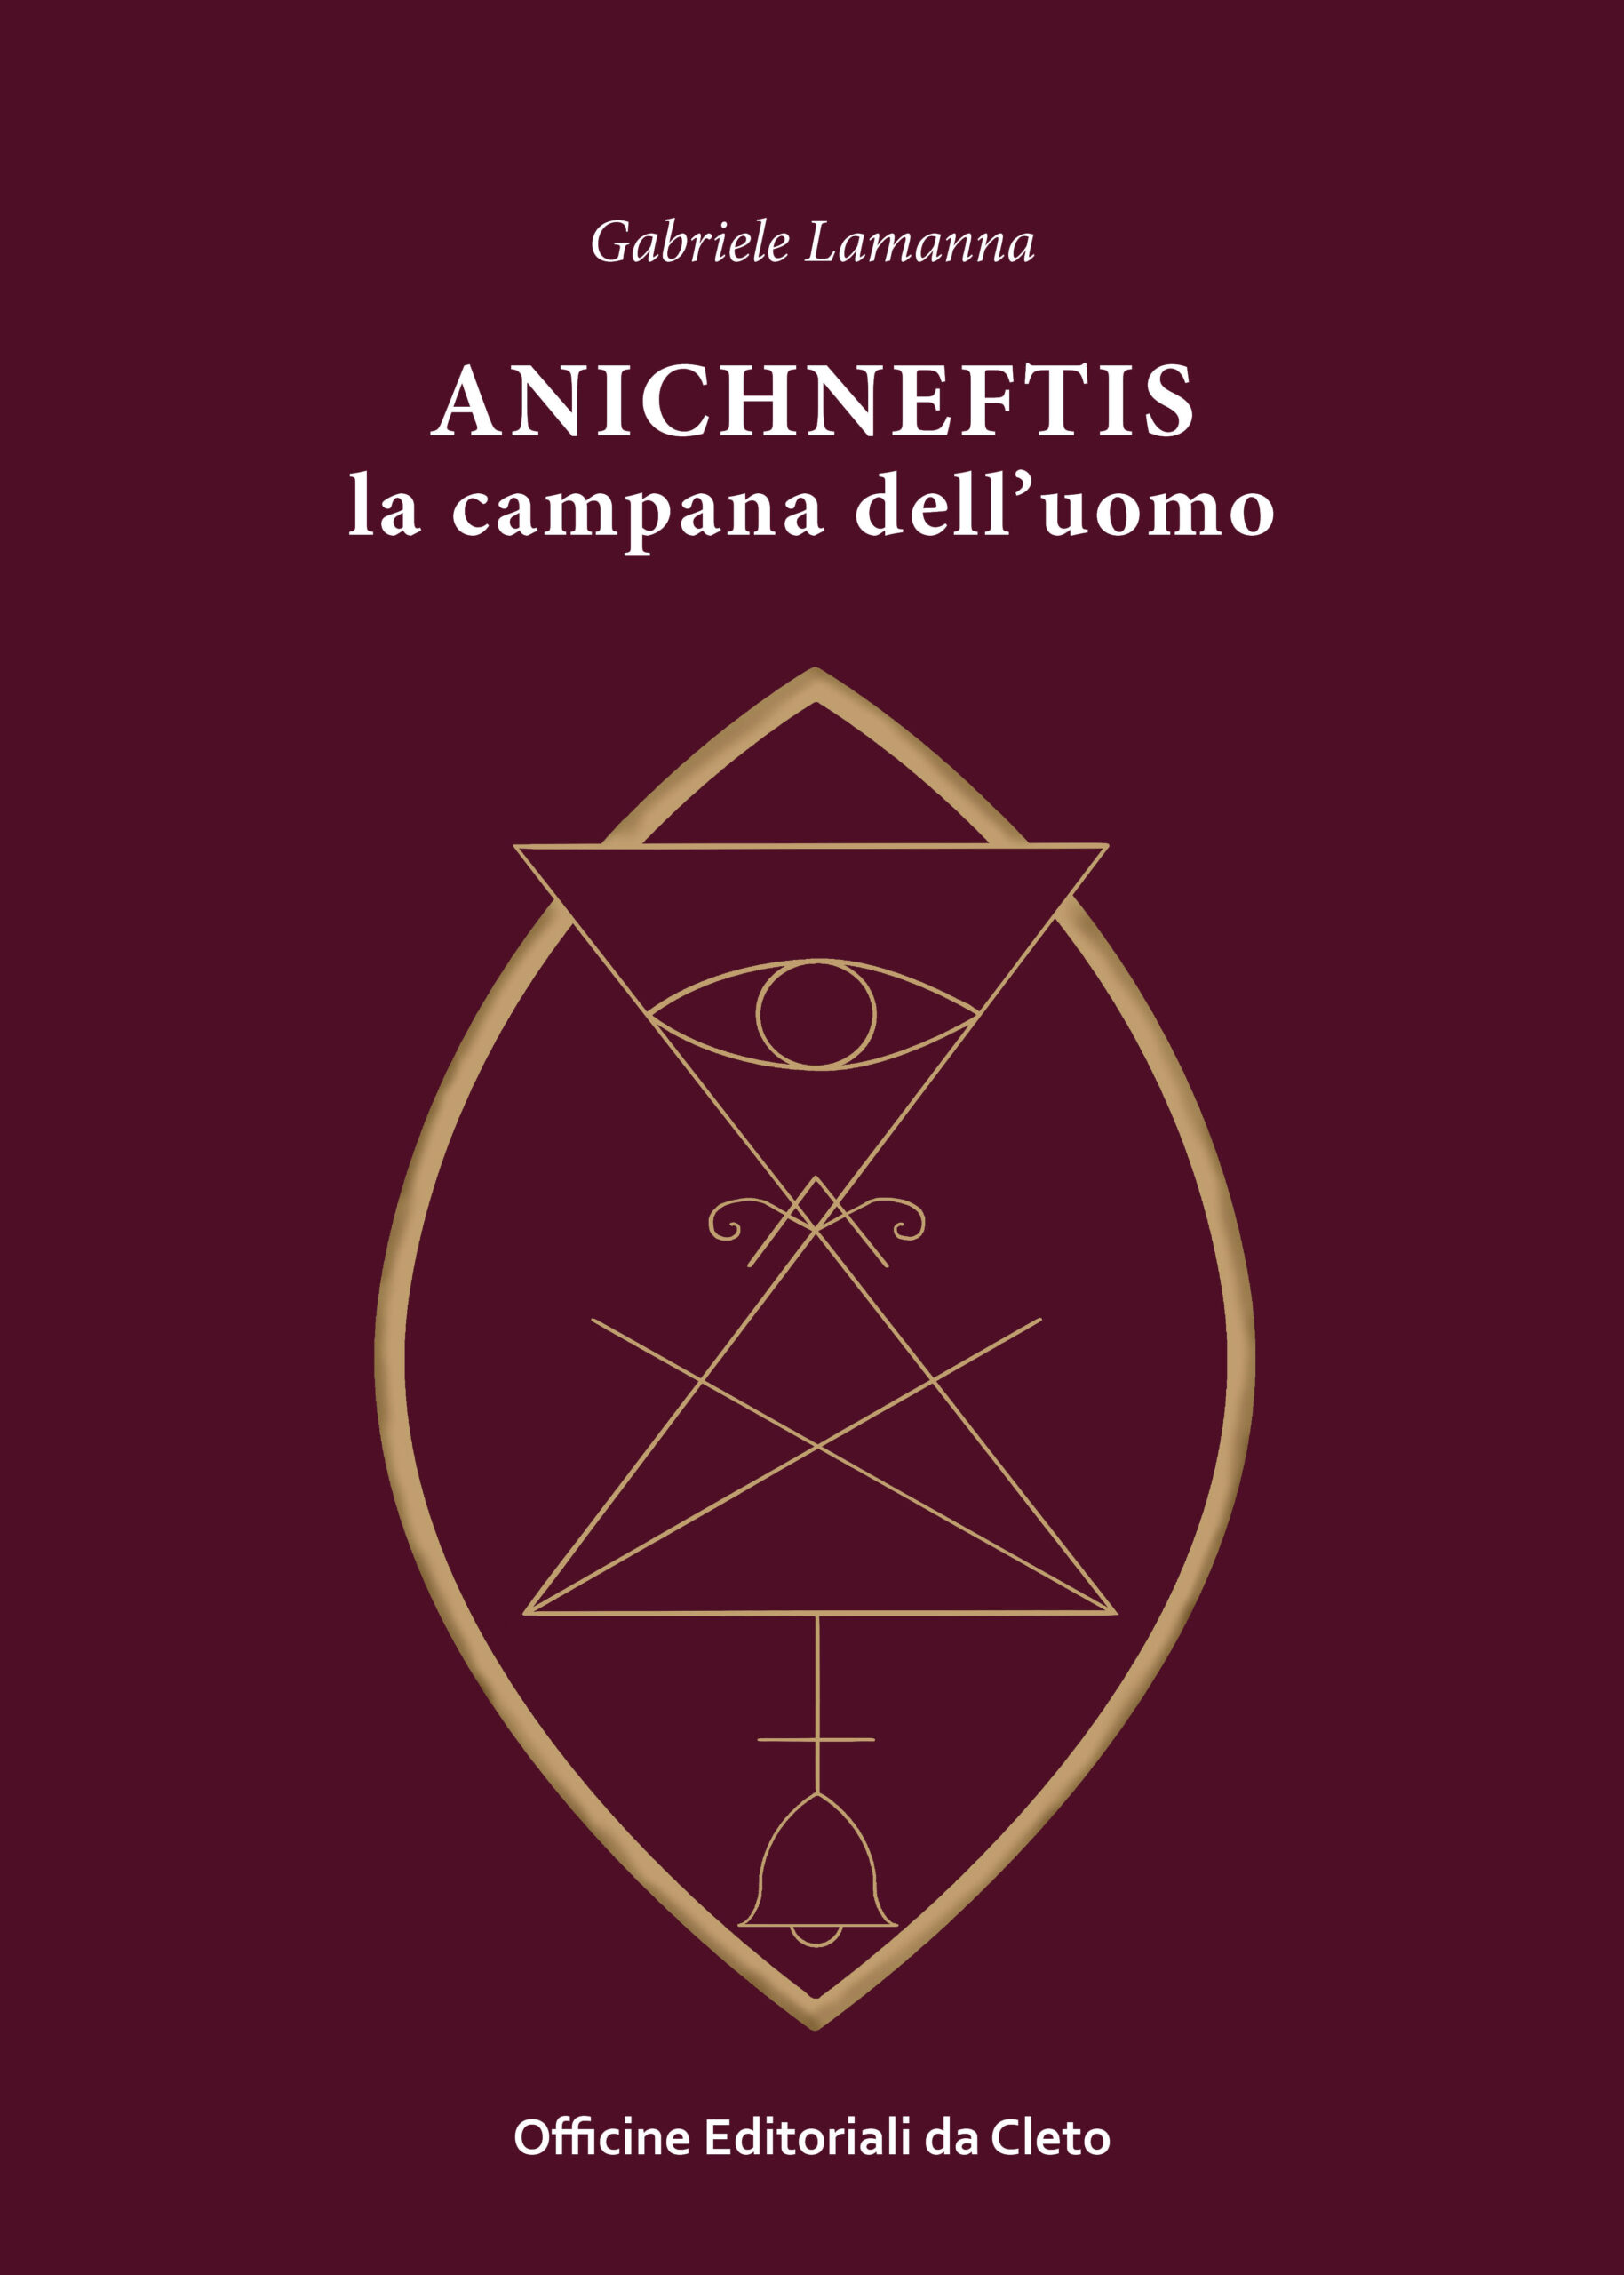 La copertina del libro di Gabriele Lamanna dal titolo Anichneftis